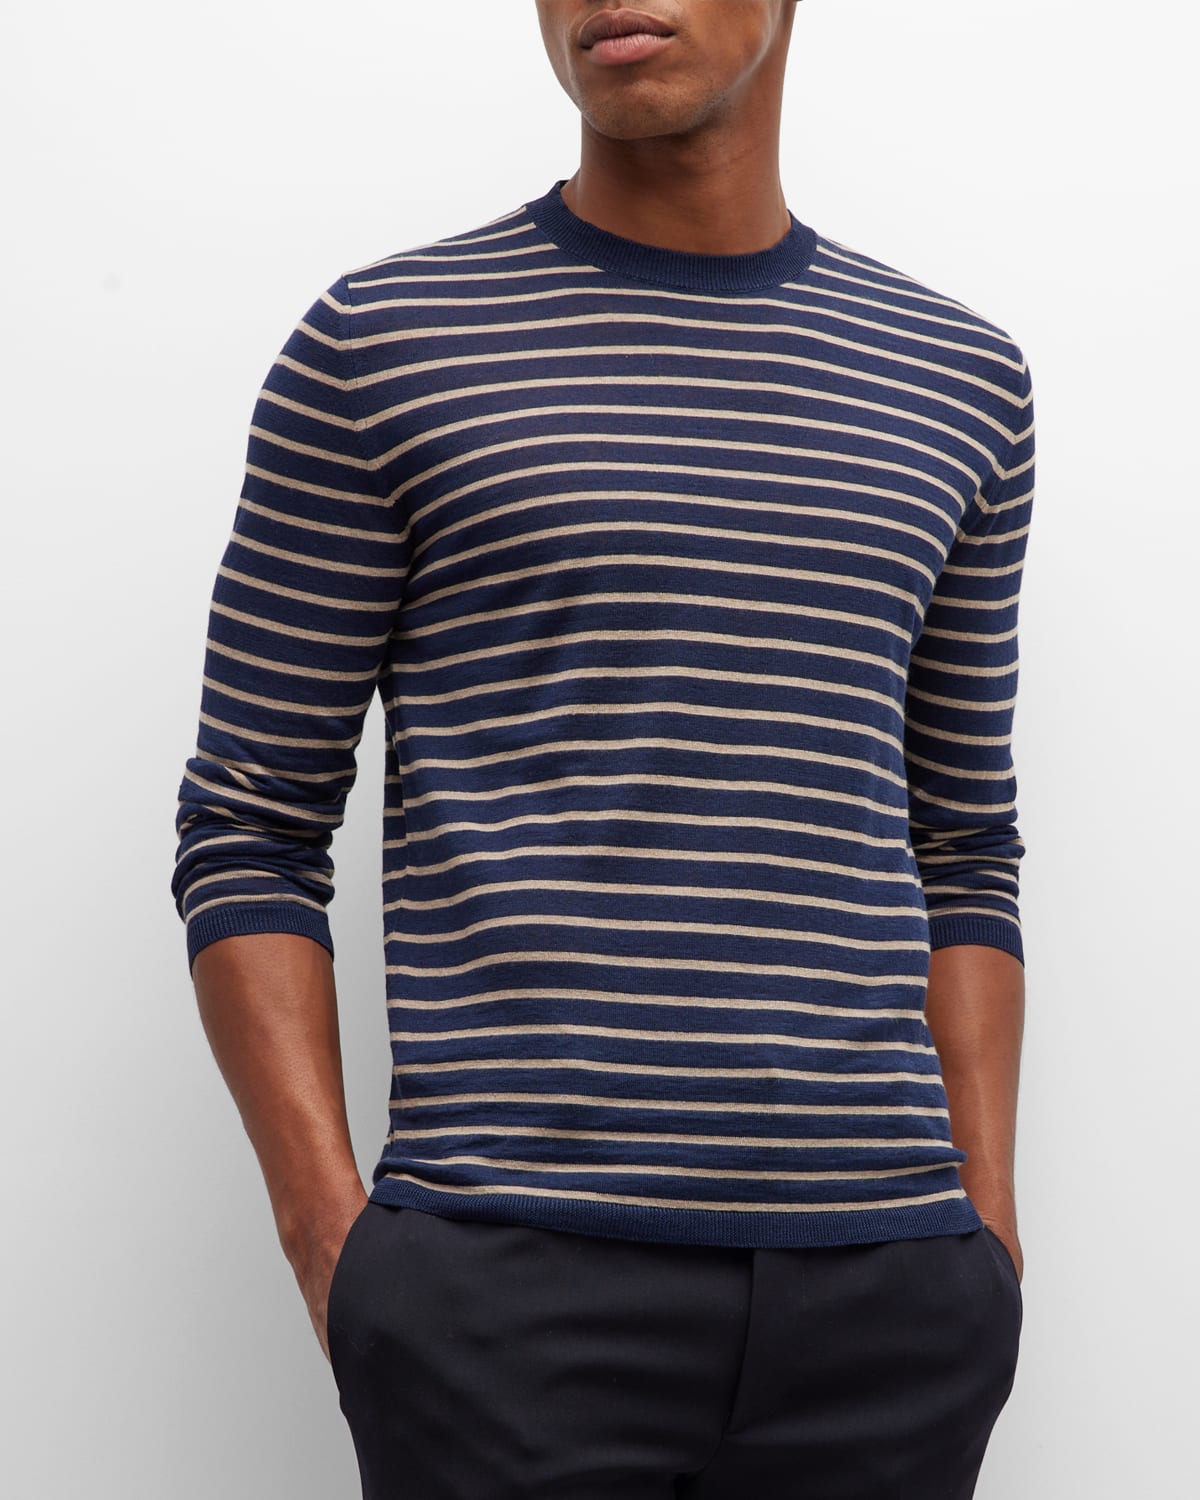 Men's Stripe Crewneck Sweater